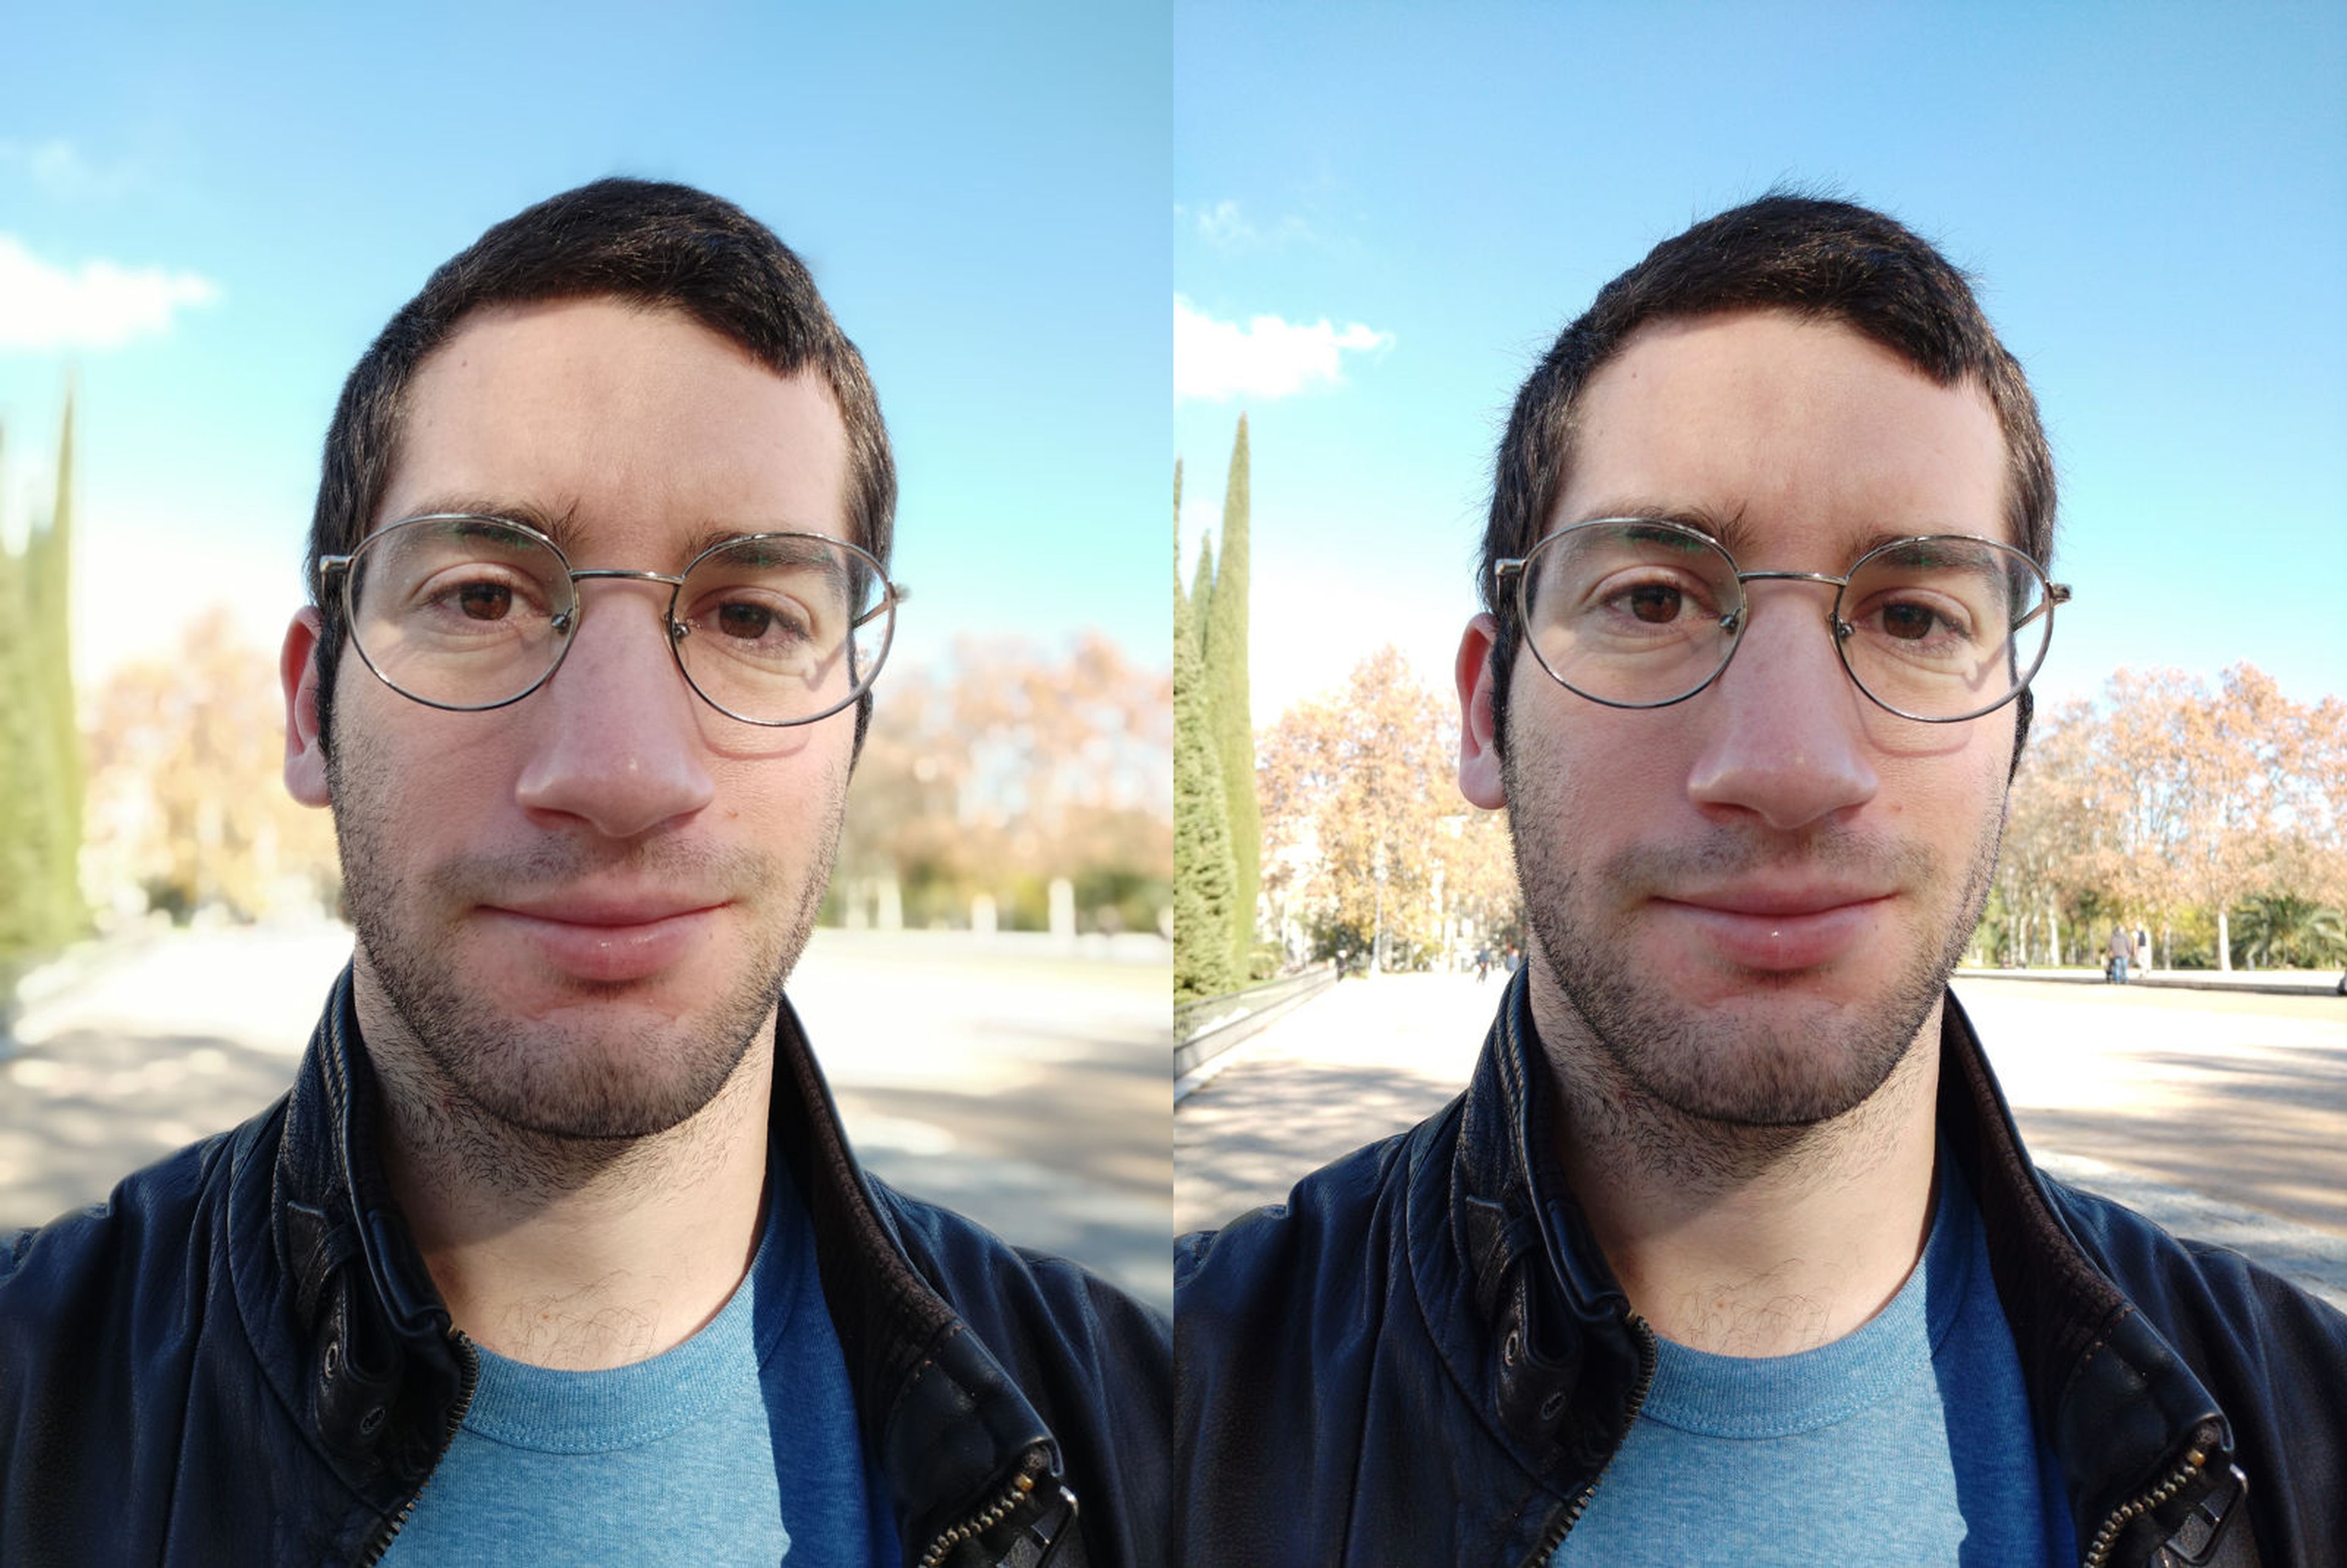 Izquierda: selfie con Modo Retrato | Derecha: mismo selfie sin Modo Retrato